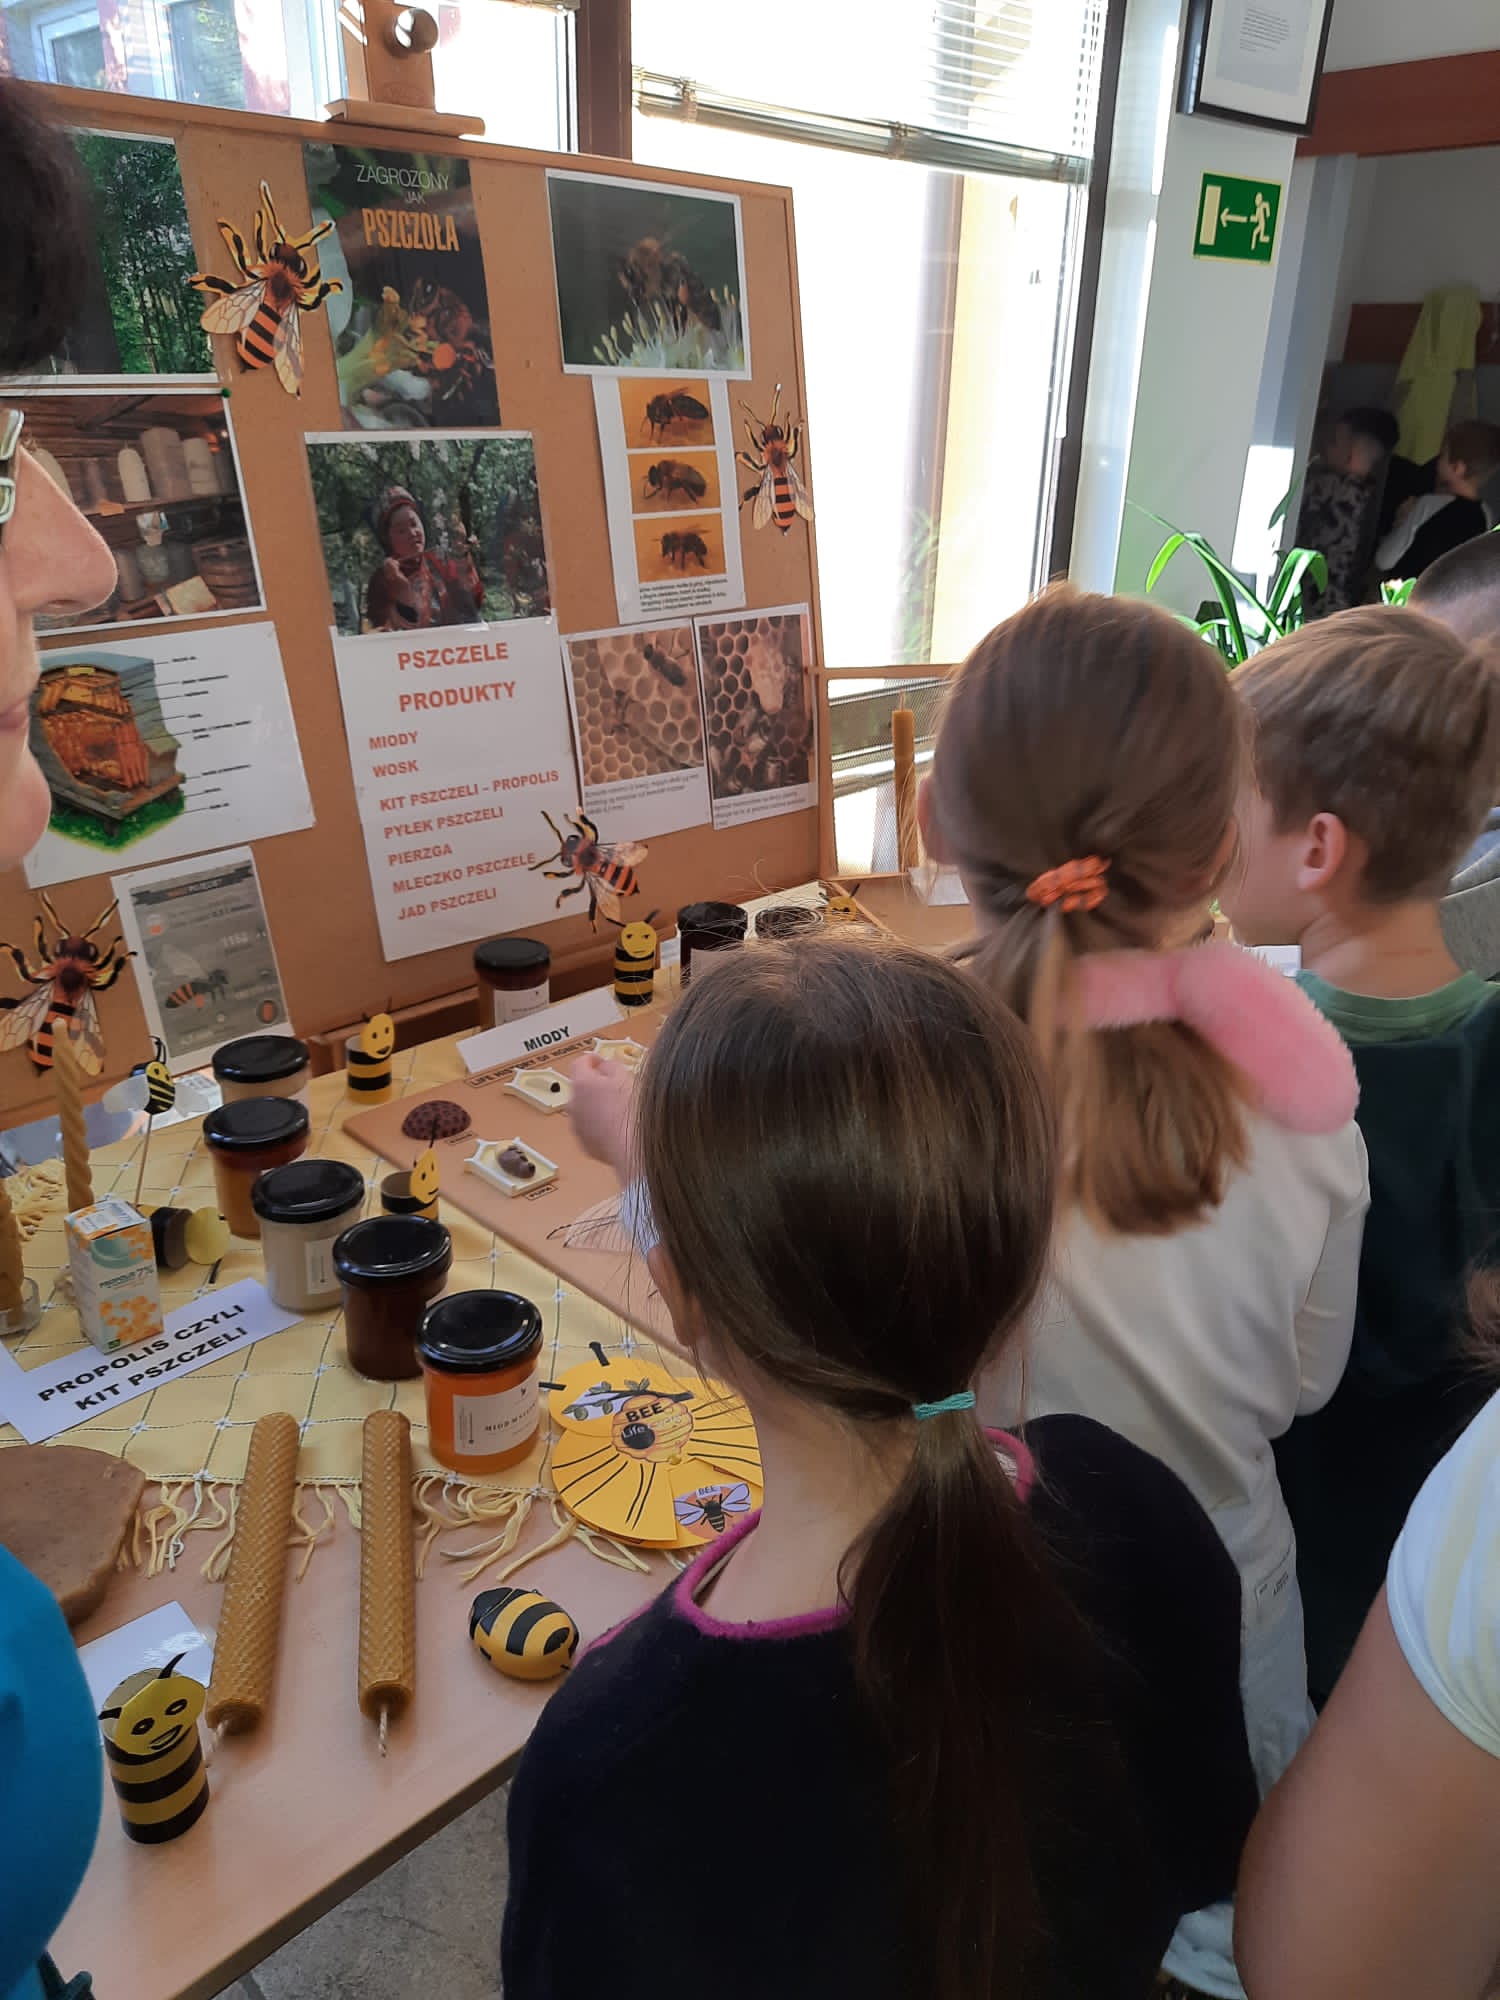 Dzieci oglądają wystawę poświęconą pszczołom, gdzie zobaczyły m.in. miody pozyskiwane z różnych gatunków roślin, wosk pszczeli i wykonane z niego przedmioty, dawne narzędzia pszczelarskie.